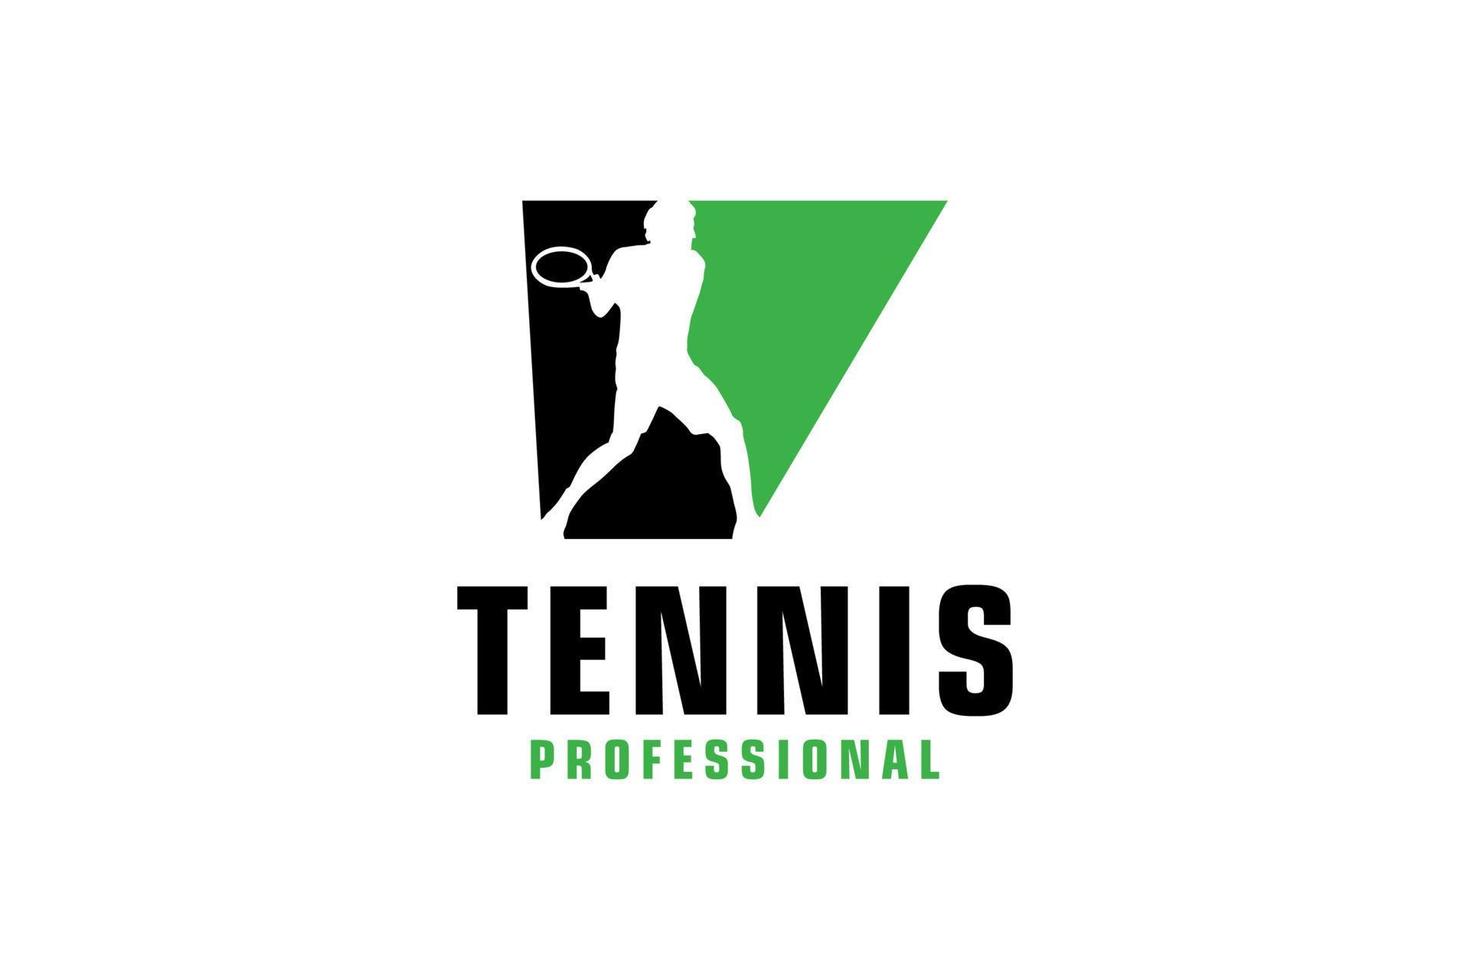 lettera v con disegno del logo della siluetta del tennista. elementi del modello di progettazione vettoriale per la squadra sportiva o l'identità aziendale.